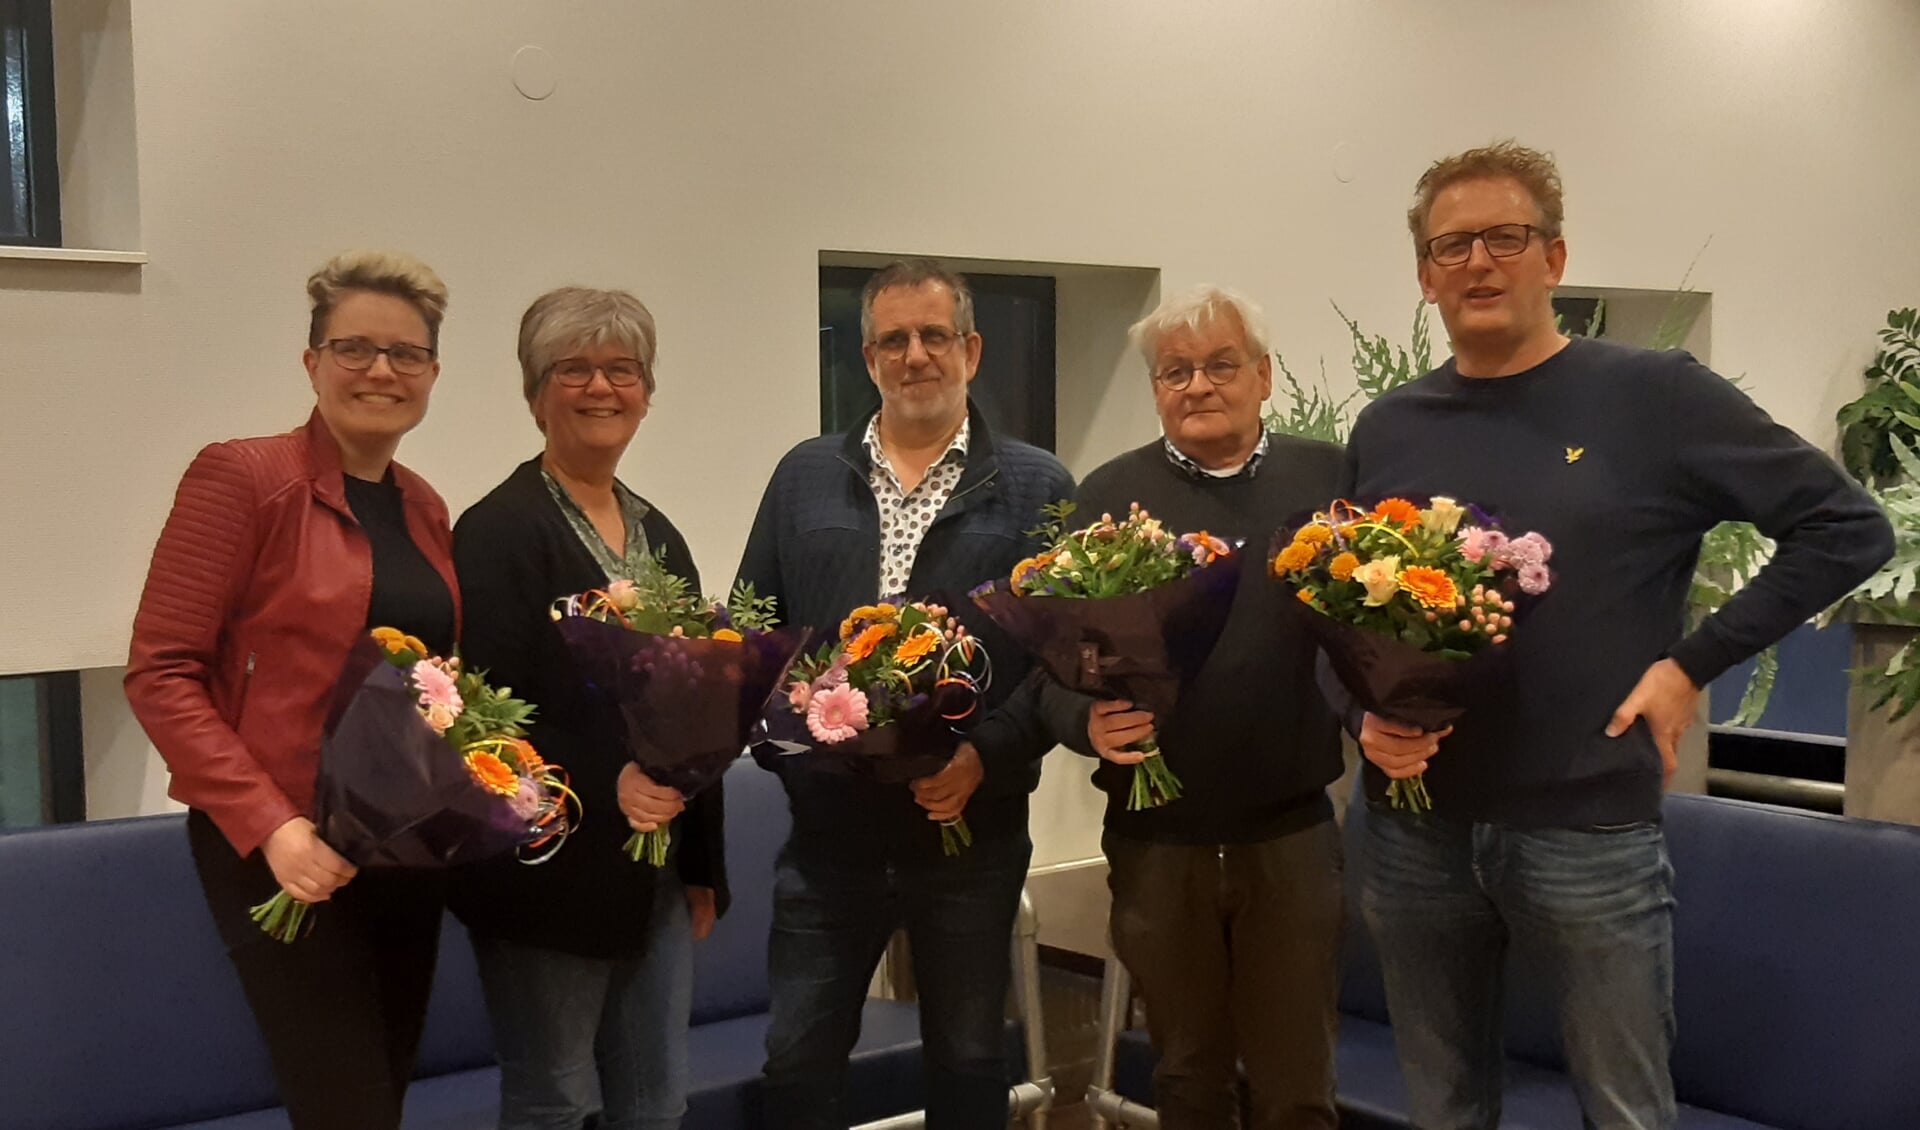 De jubilarissen van de EHBO Winterswijk. Foto: J. Bos